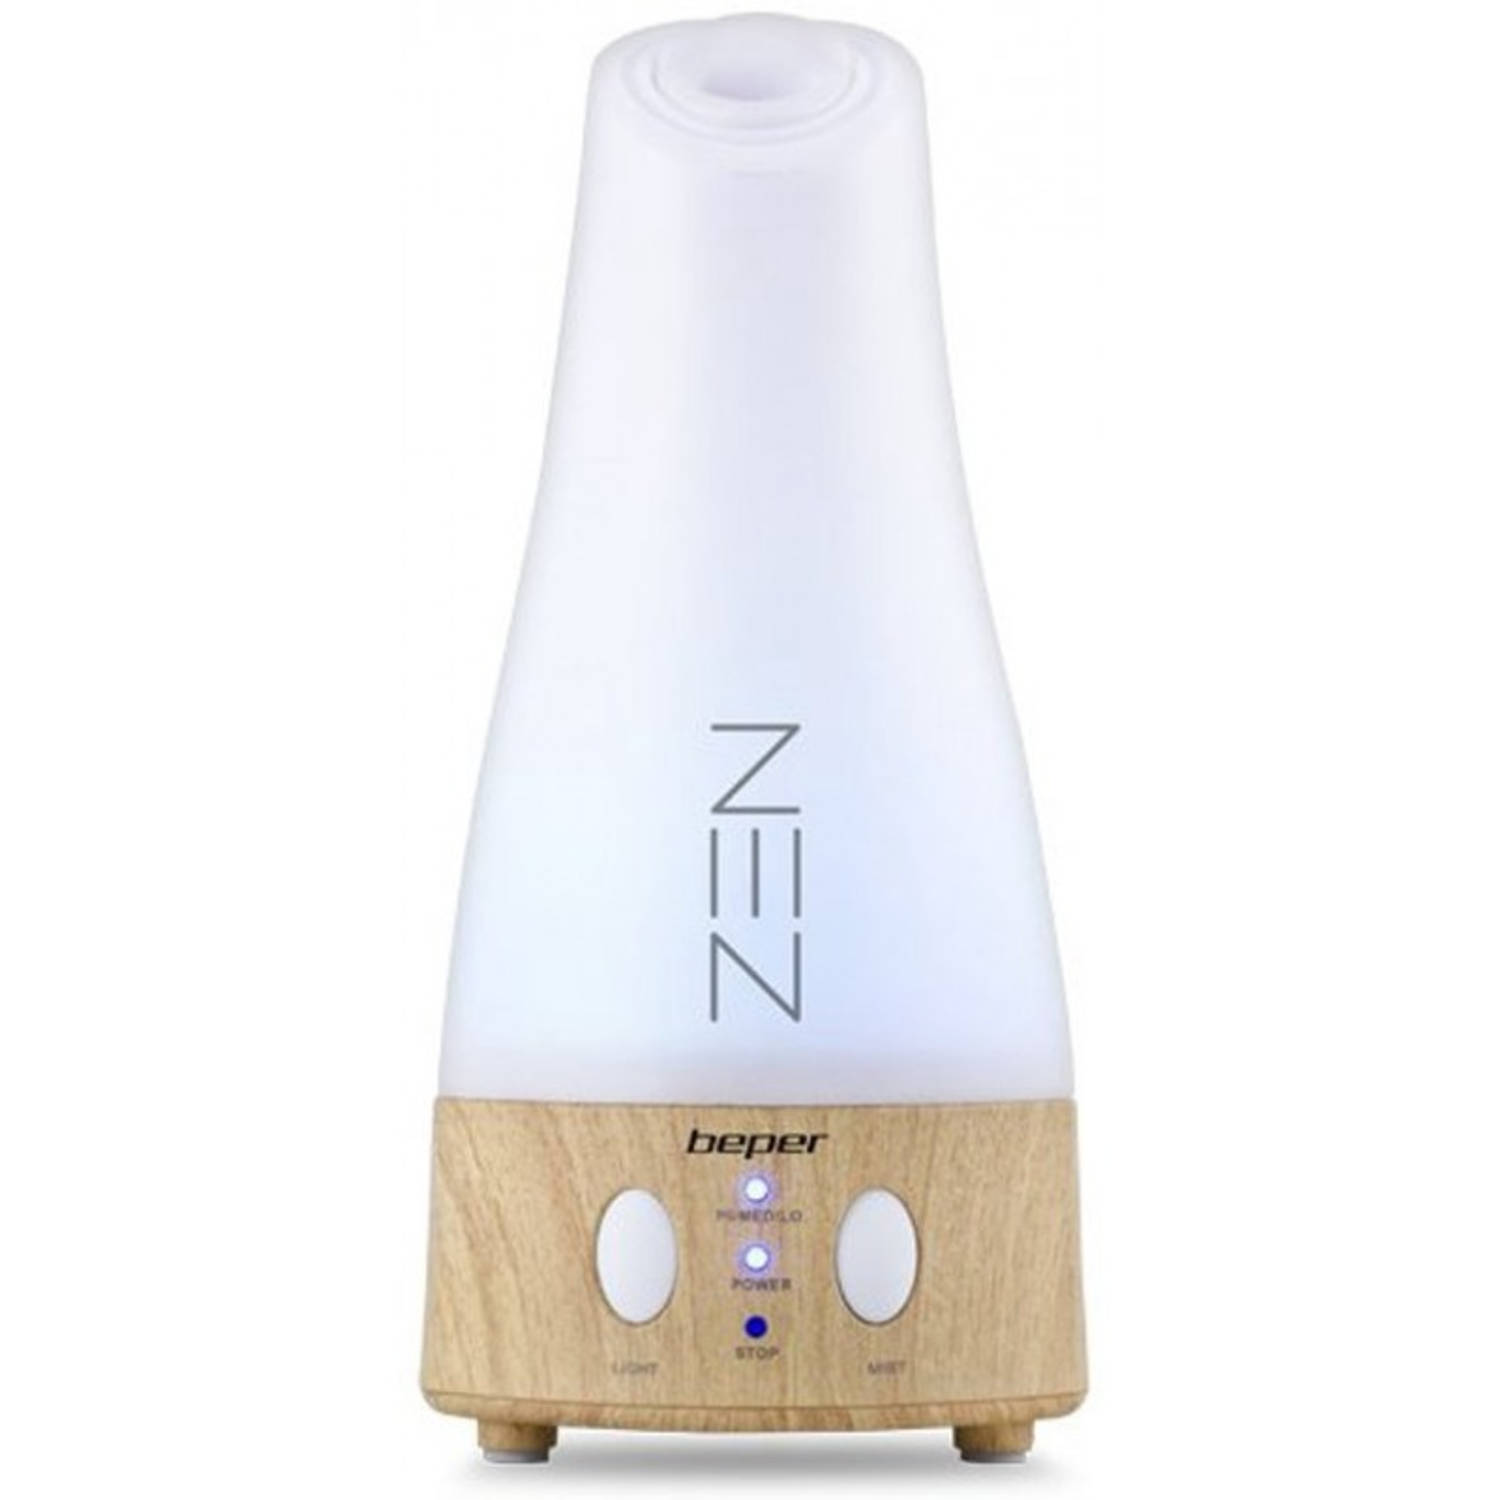 Beper 70.411 - Zen Aroma diffuser Led lamp